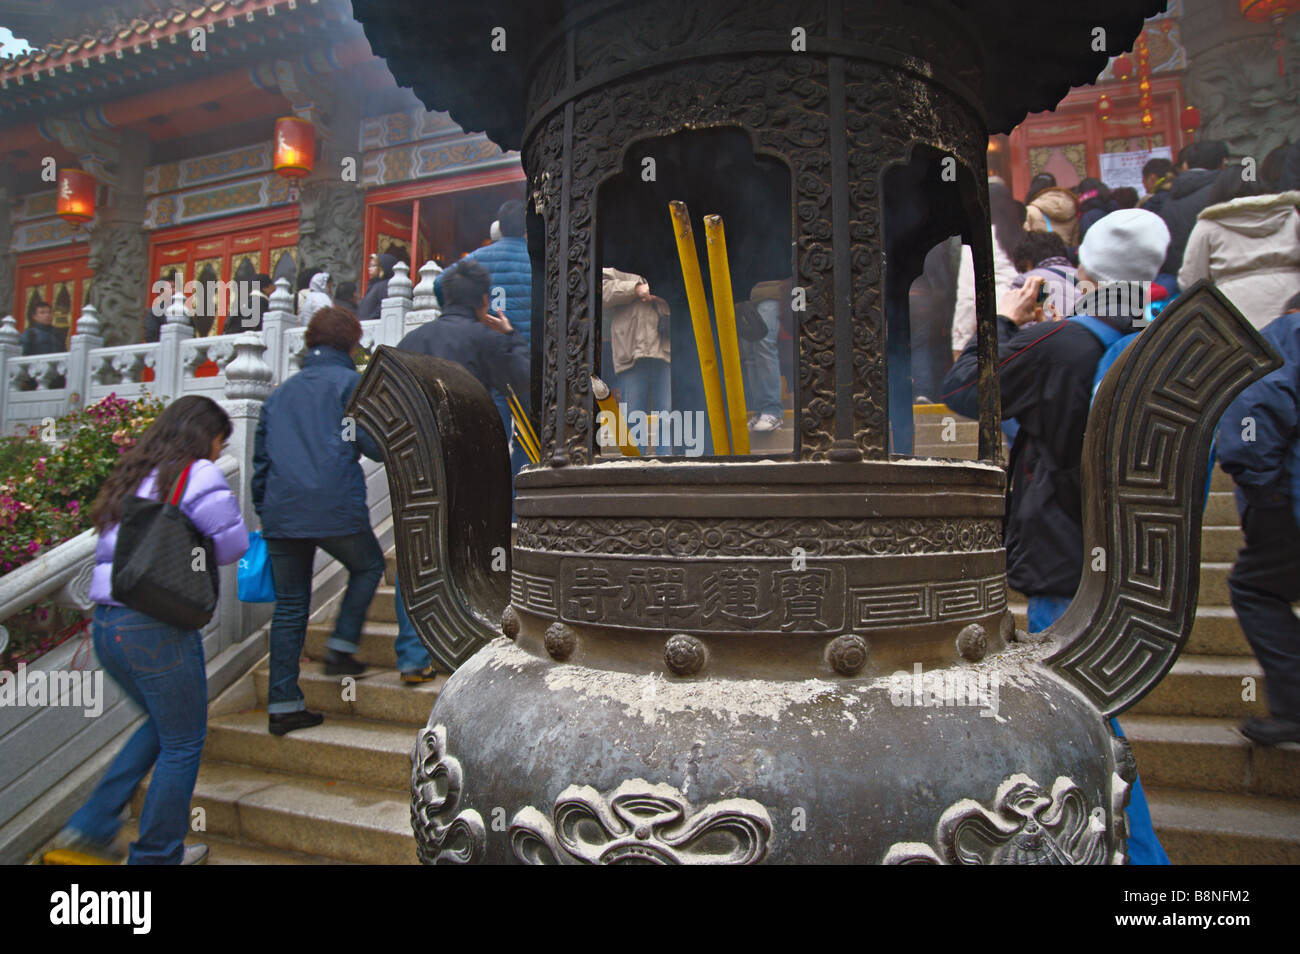 Besucher pass brennende Räucherstäbchen, wie sie am ersten Tag des Lunar New Year 2009 Po Lin Kloster Stufen Stockfoto